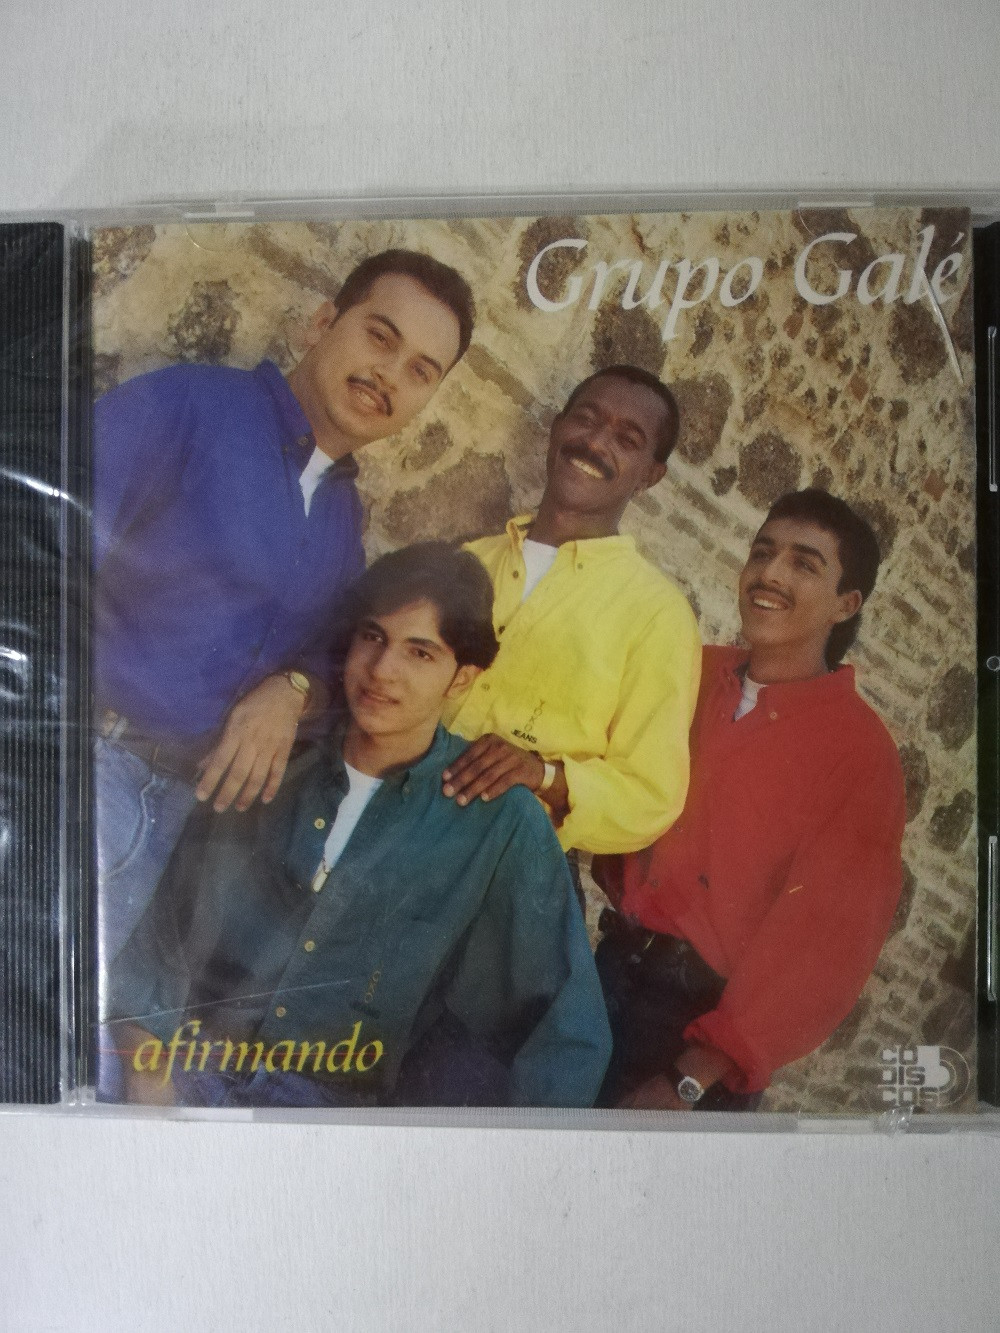 Imagen CD GRUPO GALÉ - AFIRMANDO 1